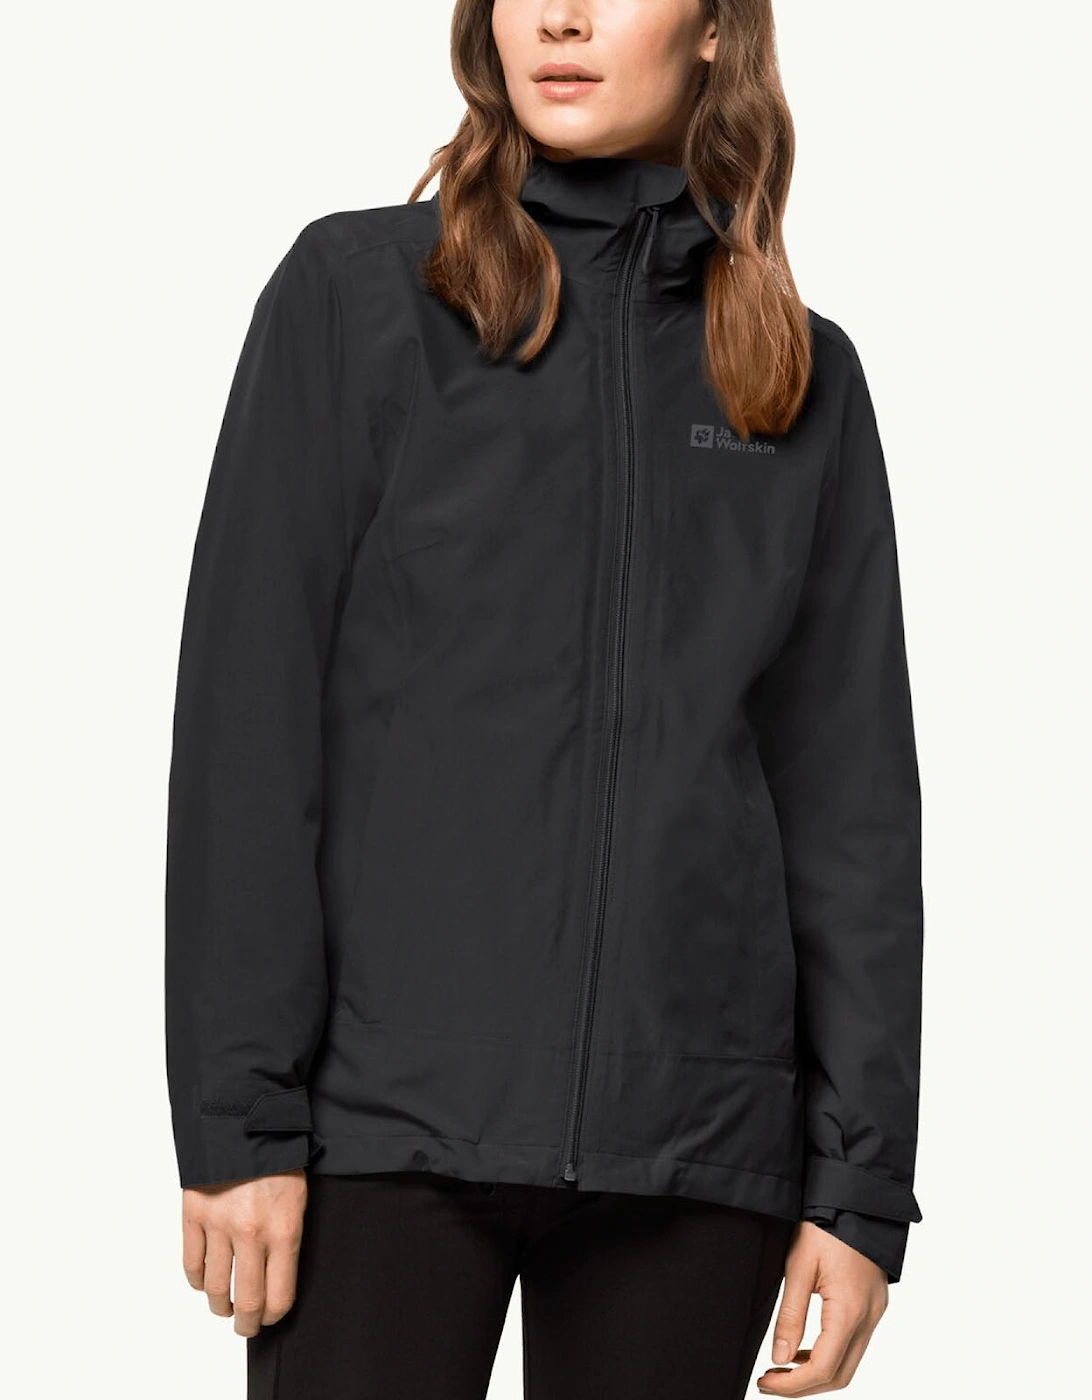 Womens Moonrise 3 IN 1 Fleece Lined Waterproof Jacket